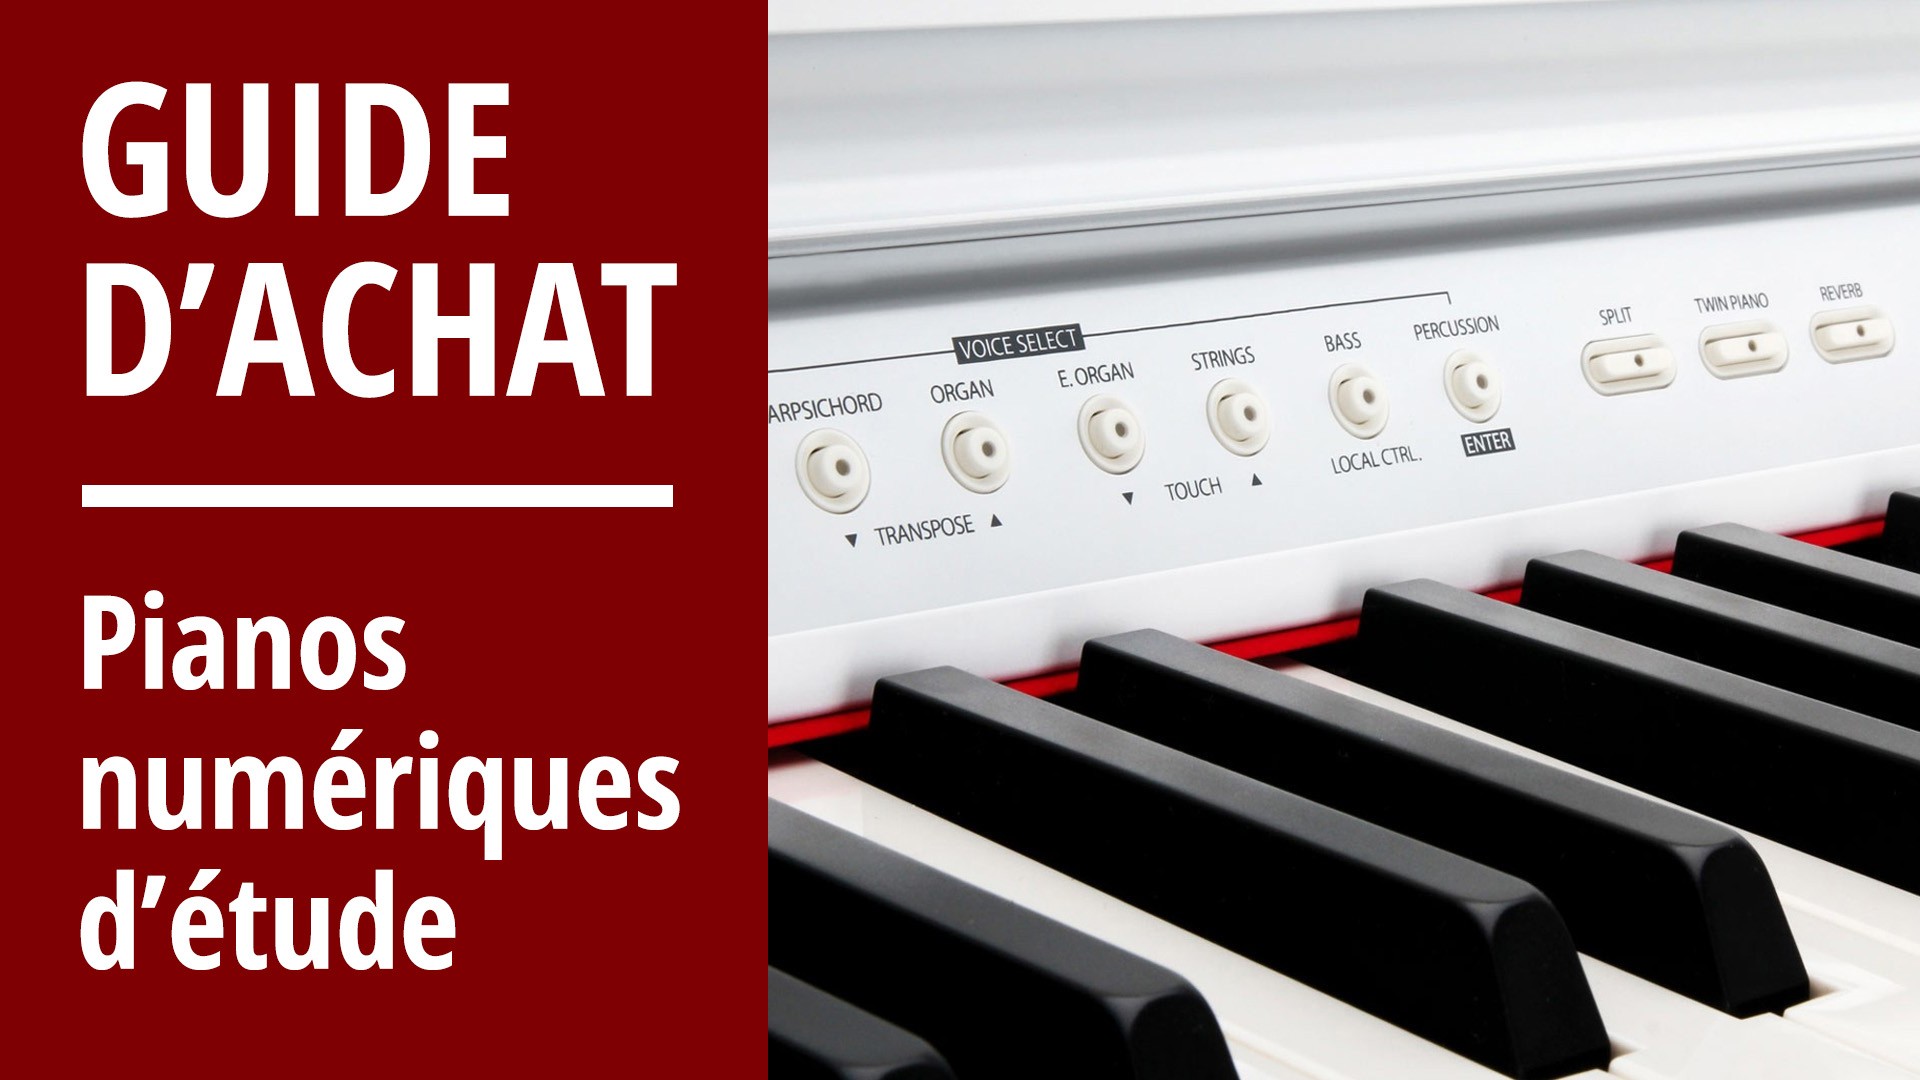 Les 10 Meilleurs Logiciels de Piano - La Touche Musicale